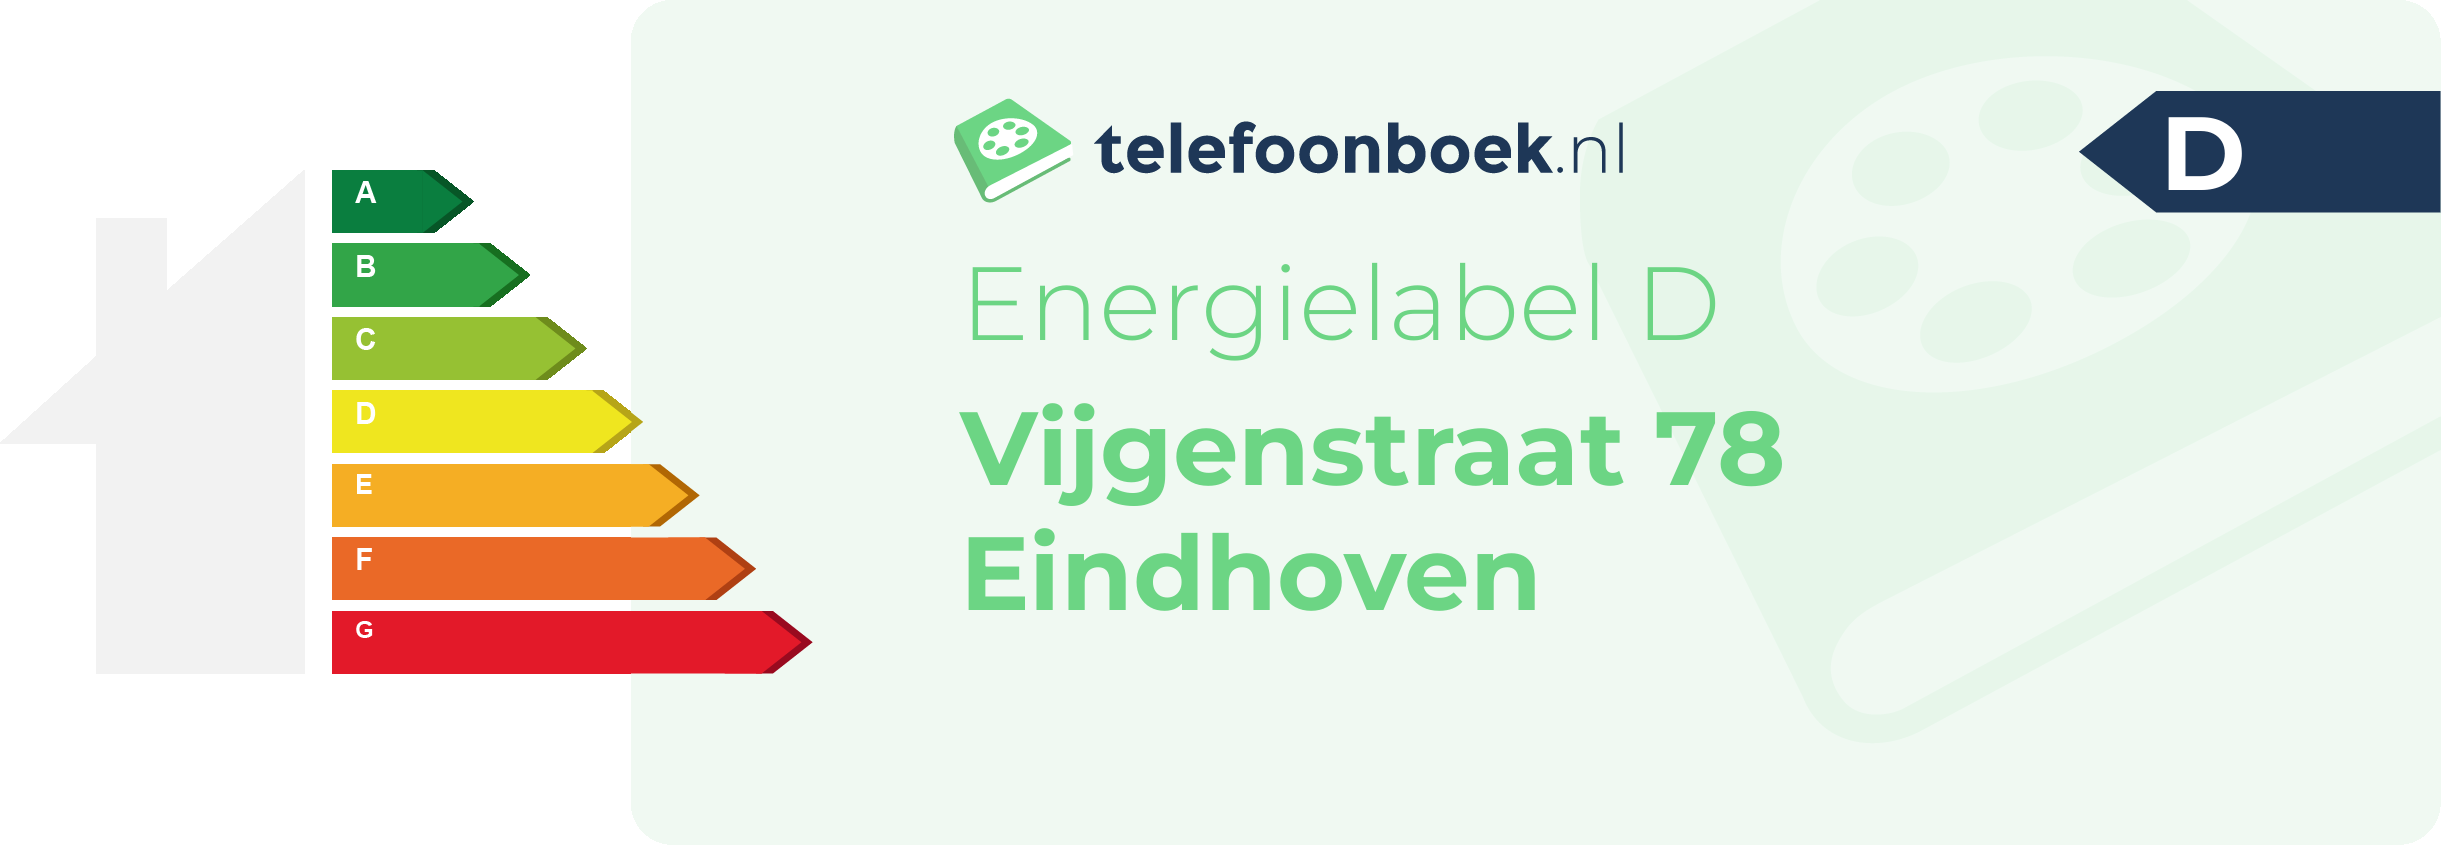 Energielabel Vijgenstraat 78 Eindhoven